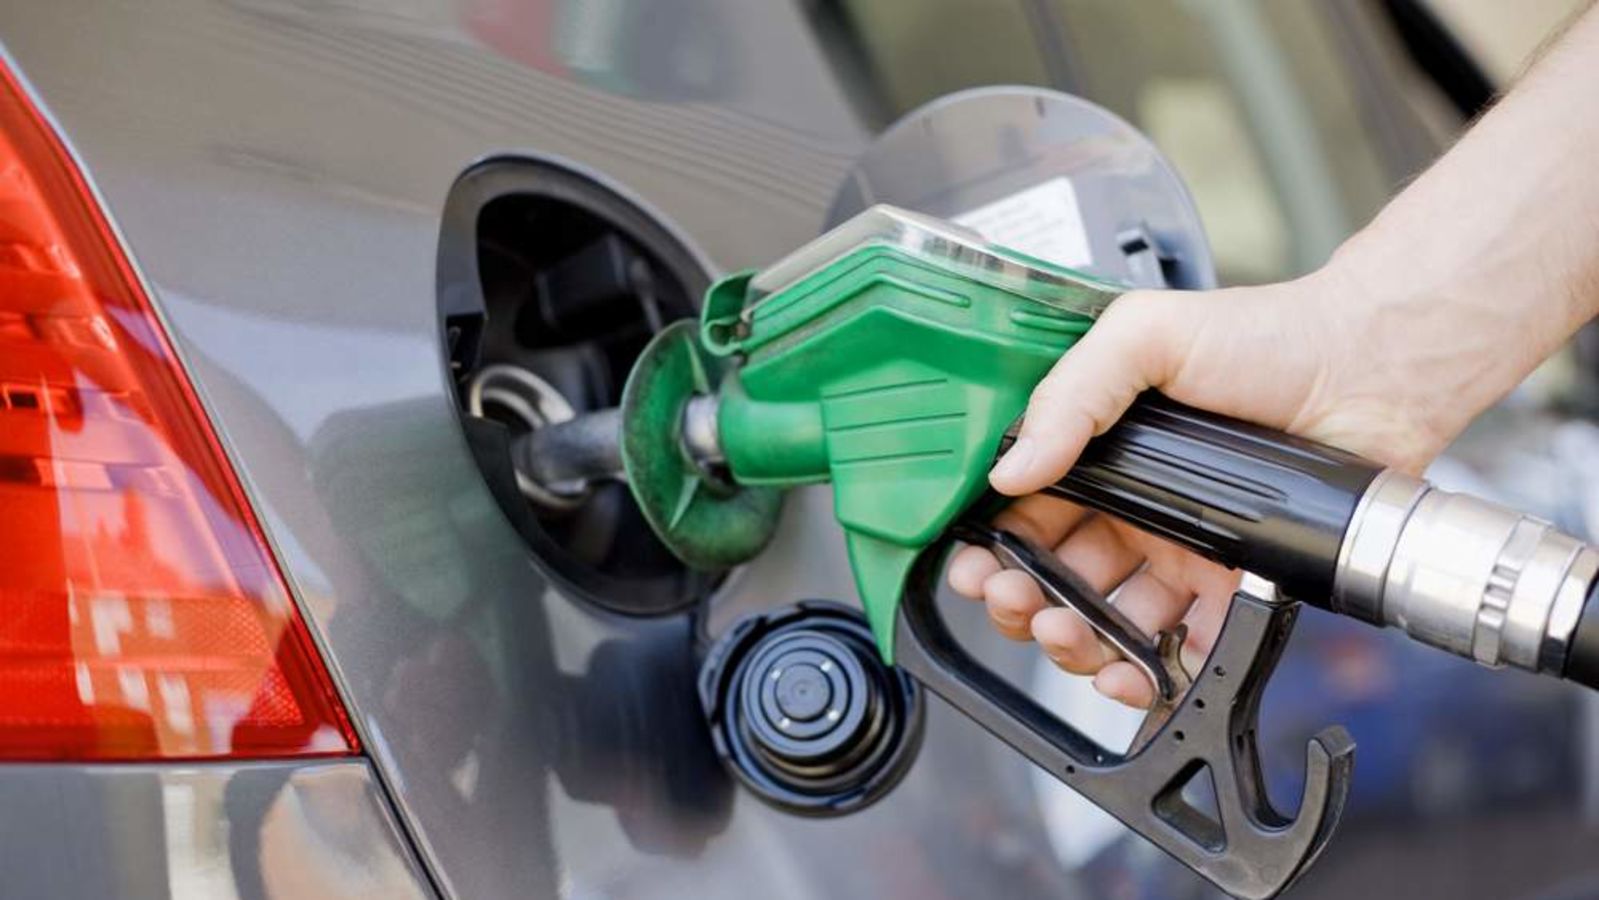 أرامكو تعلن أسعار البنزين بعد القيمة المضافة : بنزين 91 بـ 0.98 ريال